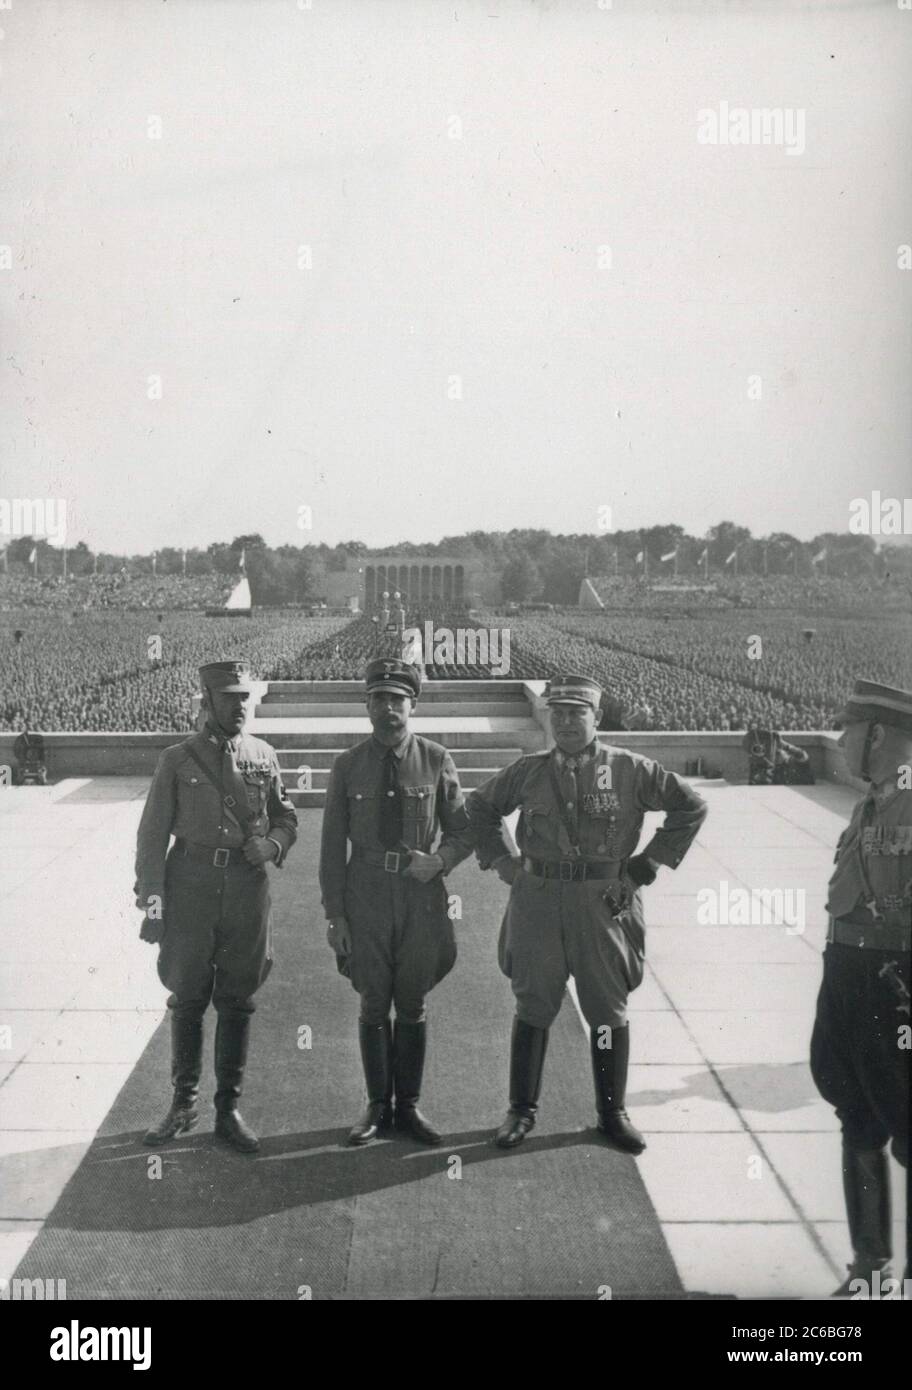 Supreme SA - Führer Pepper, Rudolf Hess, Göring auf dem NSDAP-Kongress in Nürnberg Heinrich Hoffmann Fotografien 1934 Adolf Hitlers offizieller Fotograf und Nazi-Politiker und Verleger, der Mitglied des intime Zirkels Hitlers war. Stockfoto